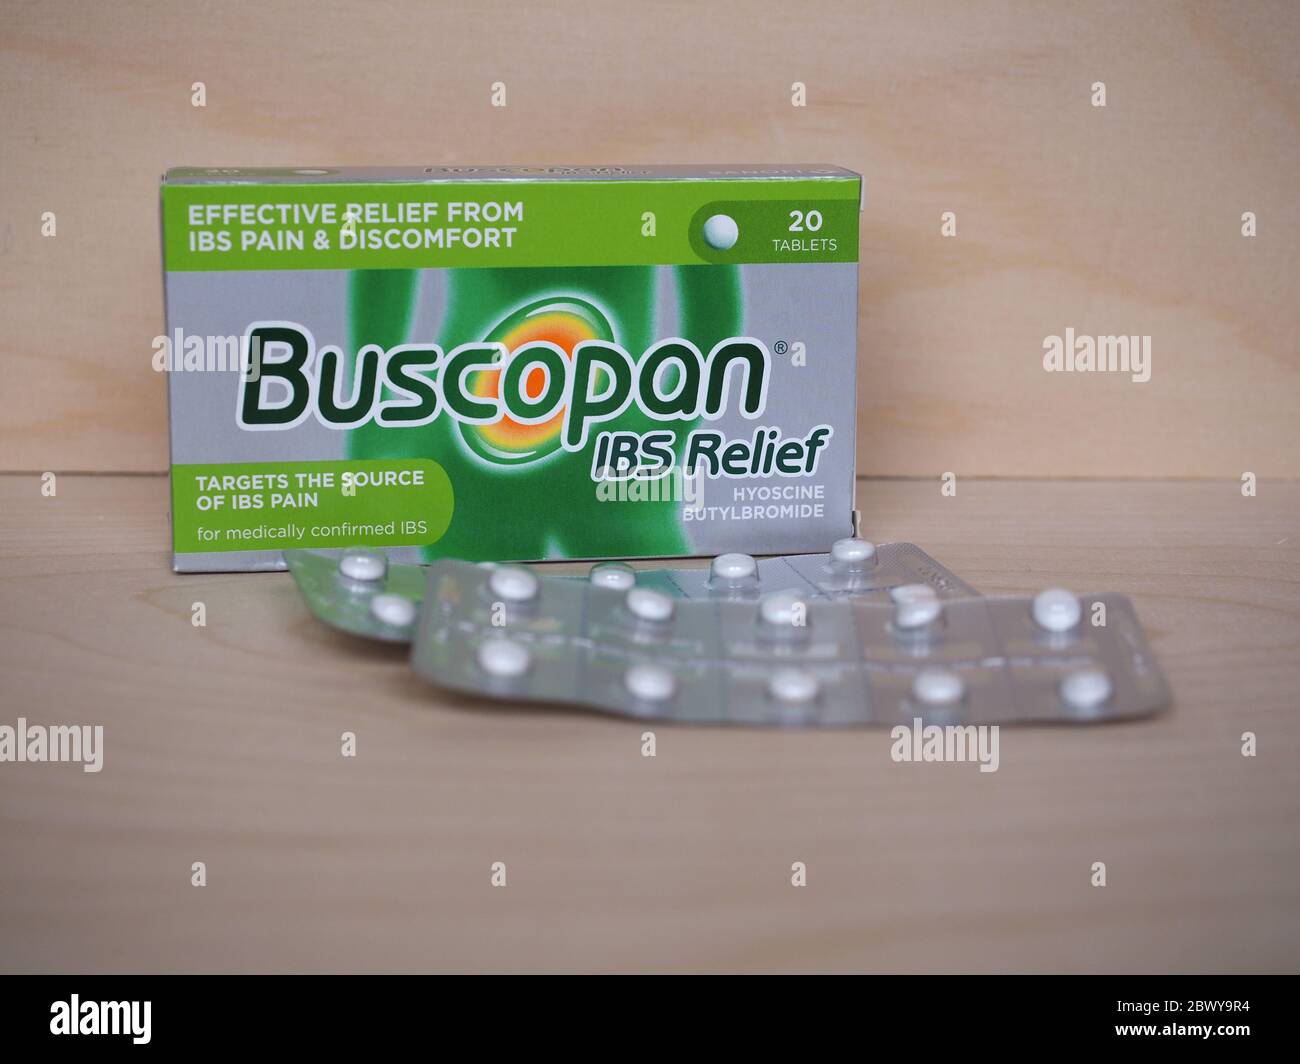 LONDRA, UK - CIRCA MAGGIO 2020: Sanofi Buscopan IBS Relief compresse di  Hyoscina butilbromuro Foto stock - Alamy